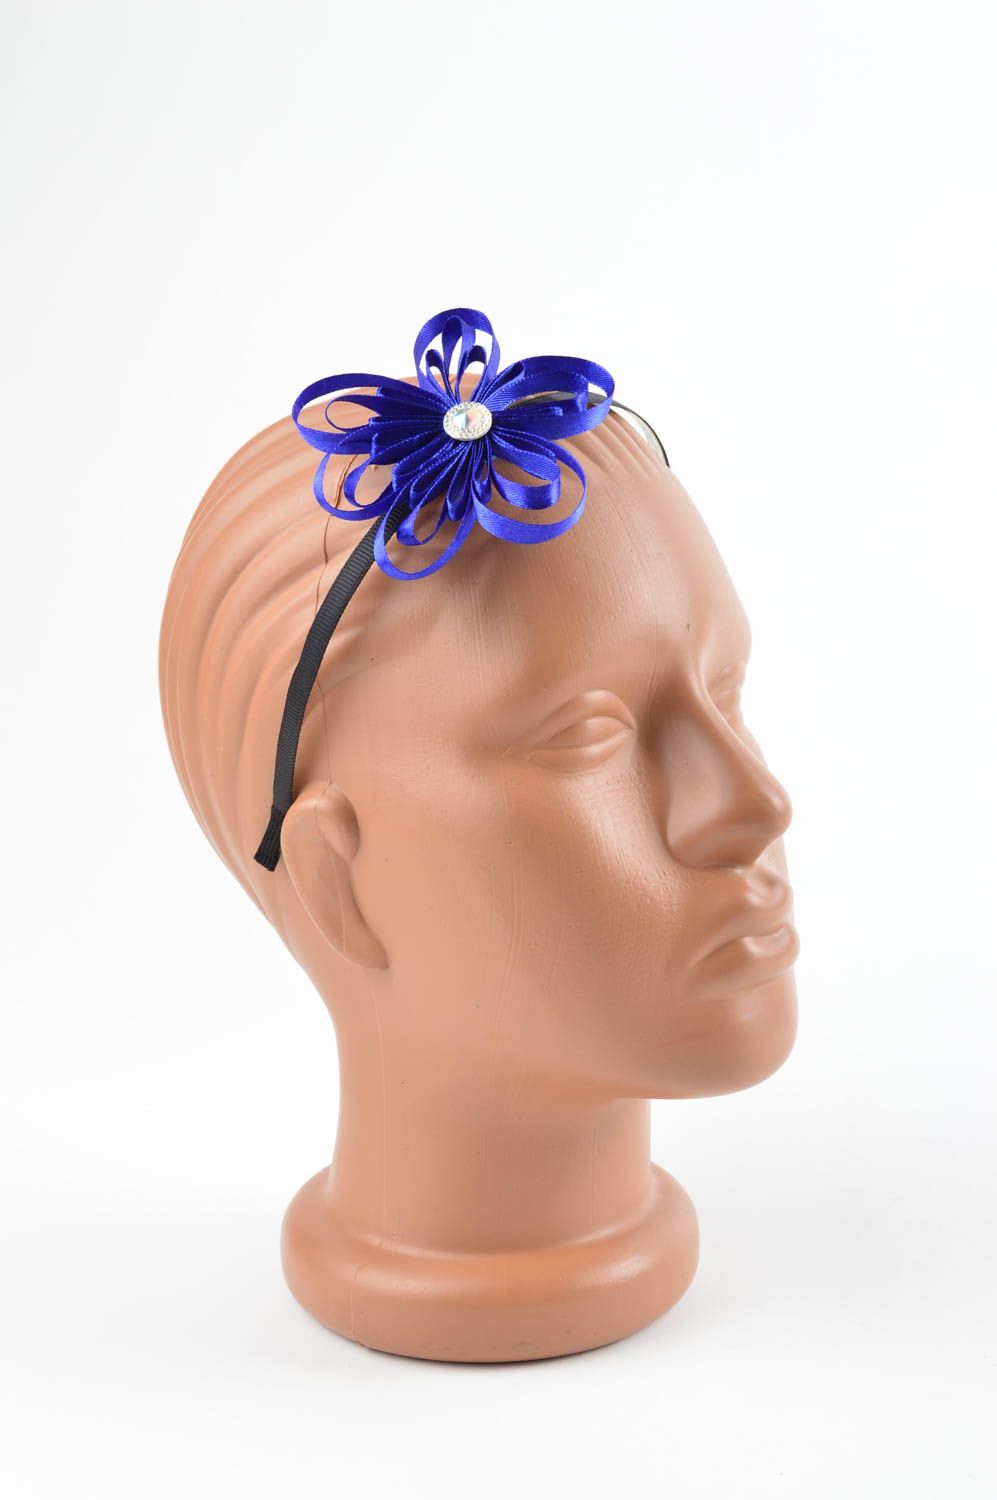 Mode Schmuck in Blau handmade zarter Haar Schmuck tolles Geschenk für Mädchen foto 1